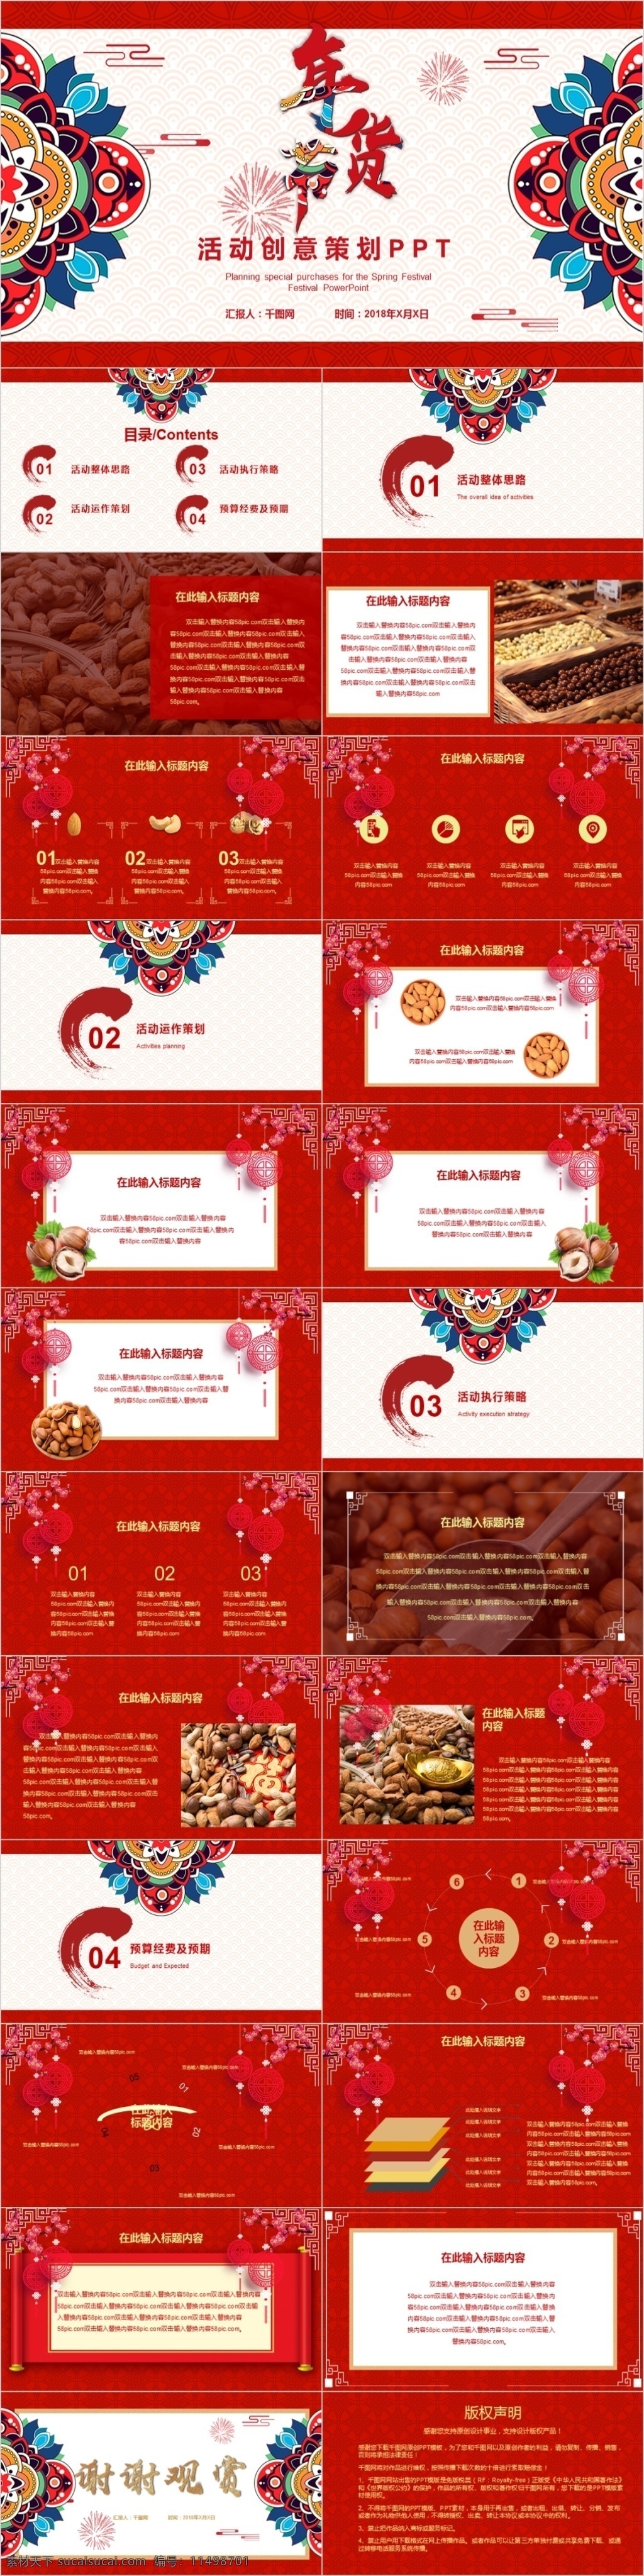 2018 中国 风 年货 节 活动策划 中国风 年货节 喜庆 红色 方案策划